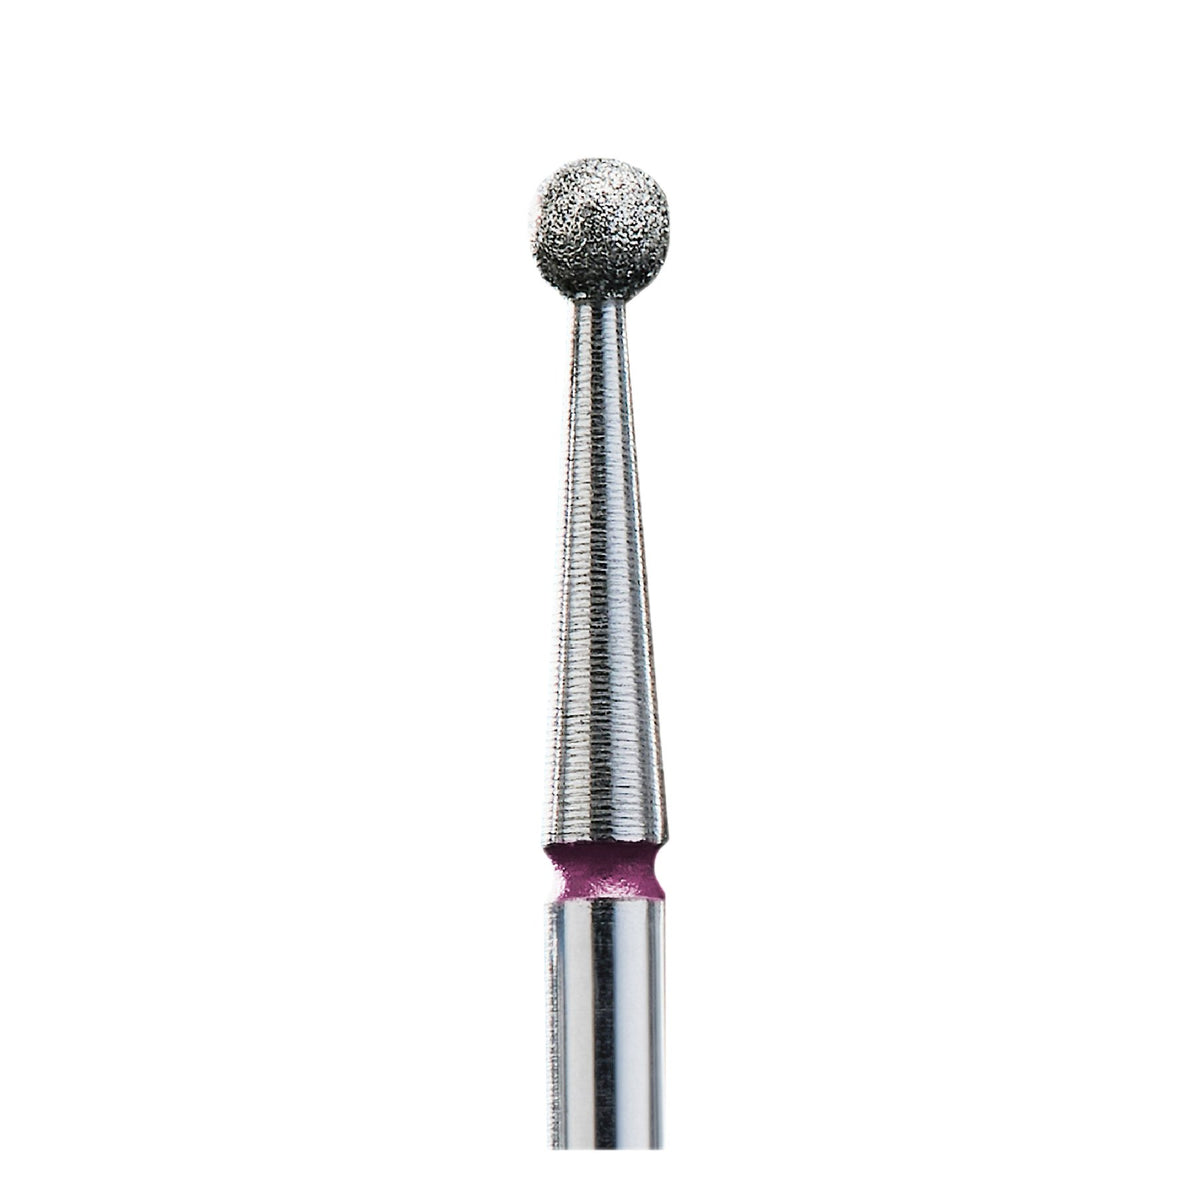 STALEKS DIAMOND NAIL DRILL BIT FA01 "BALL" PINK, 6 PCS SET 2,7 mm